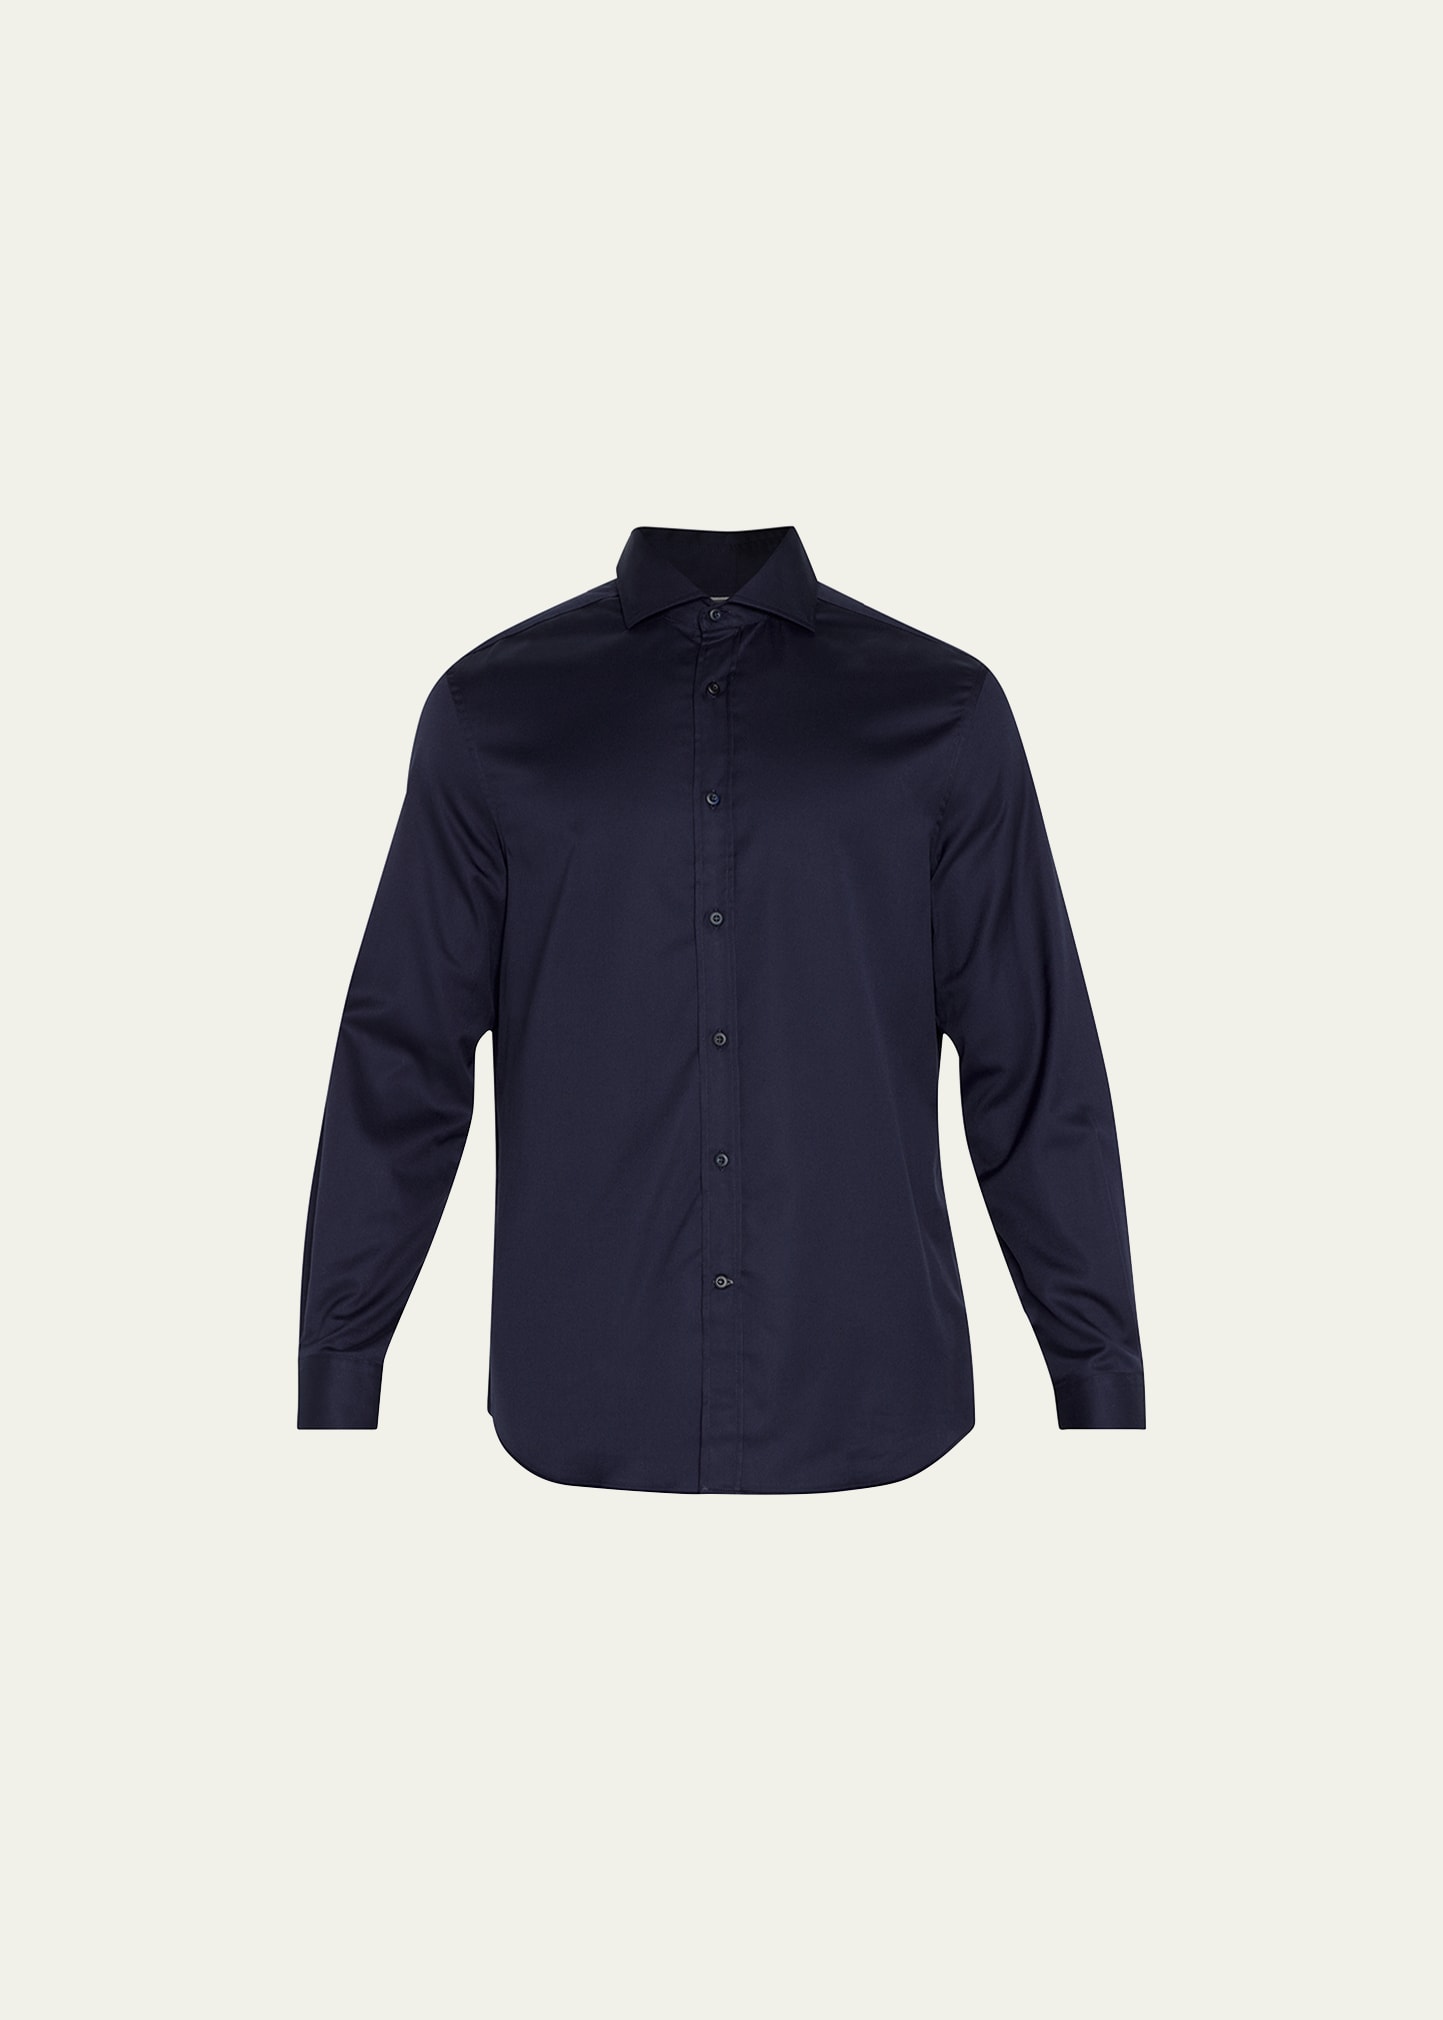 Brunello Cucinelli Men's Cotton Twill Sport Shirt In Navy